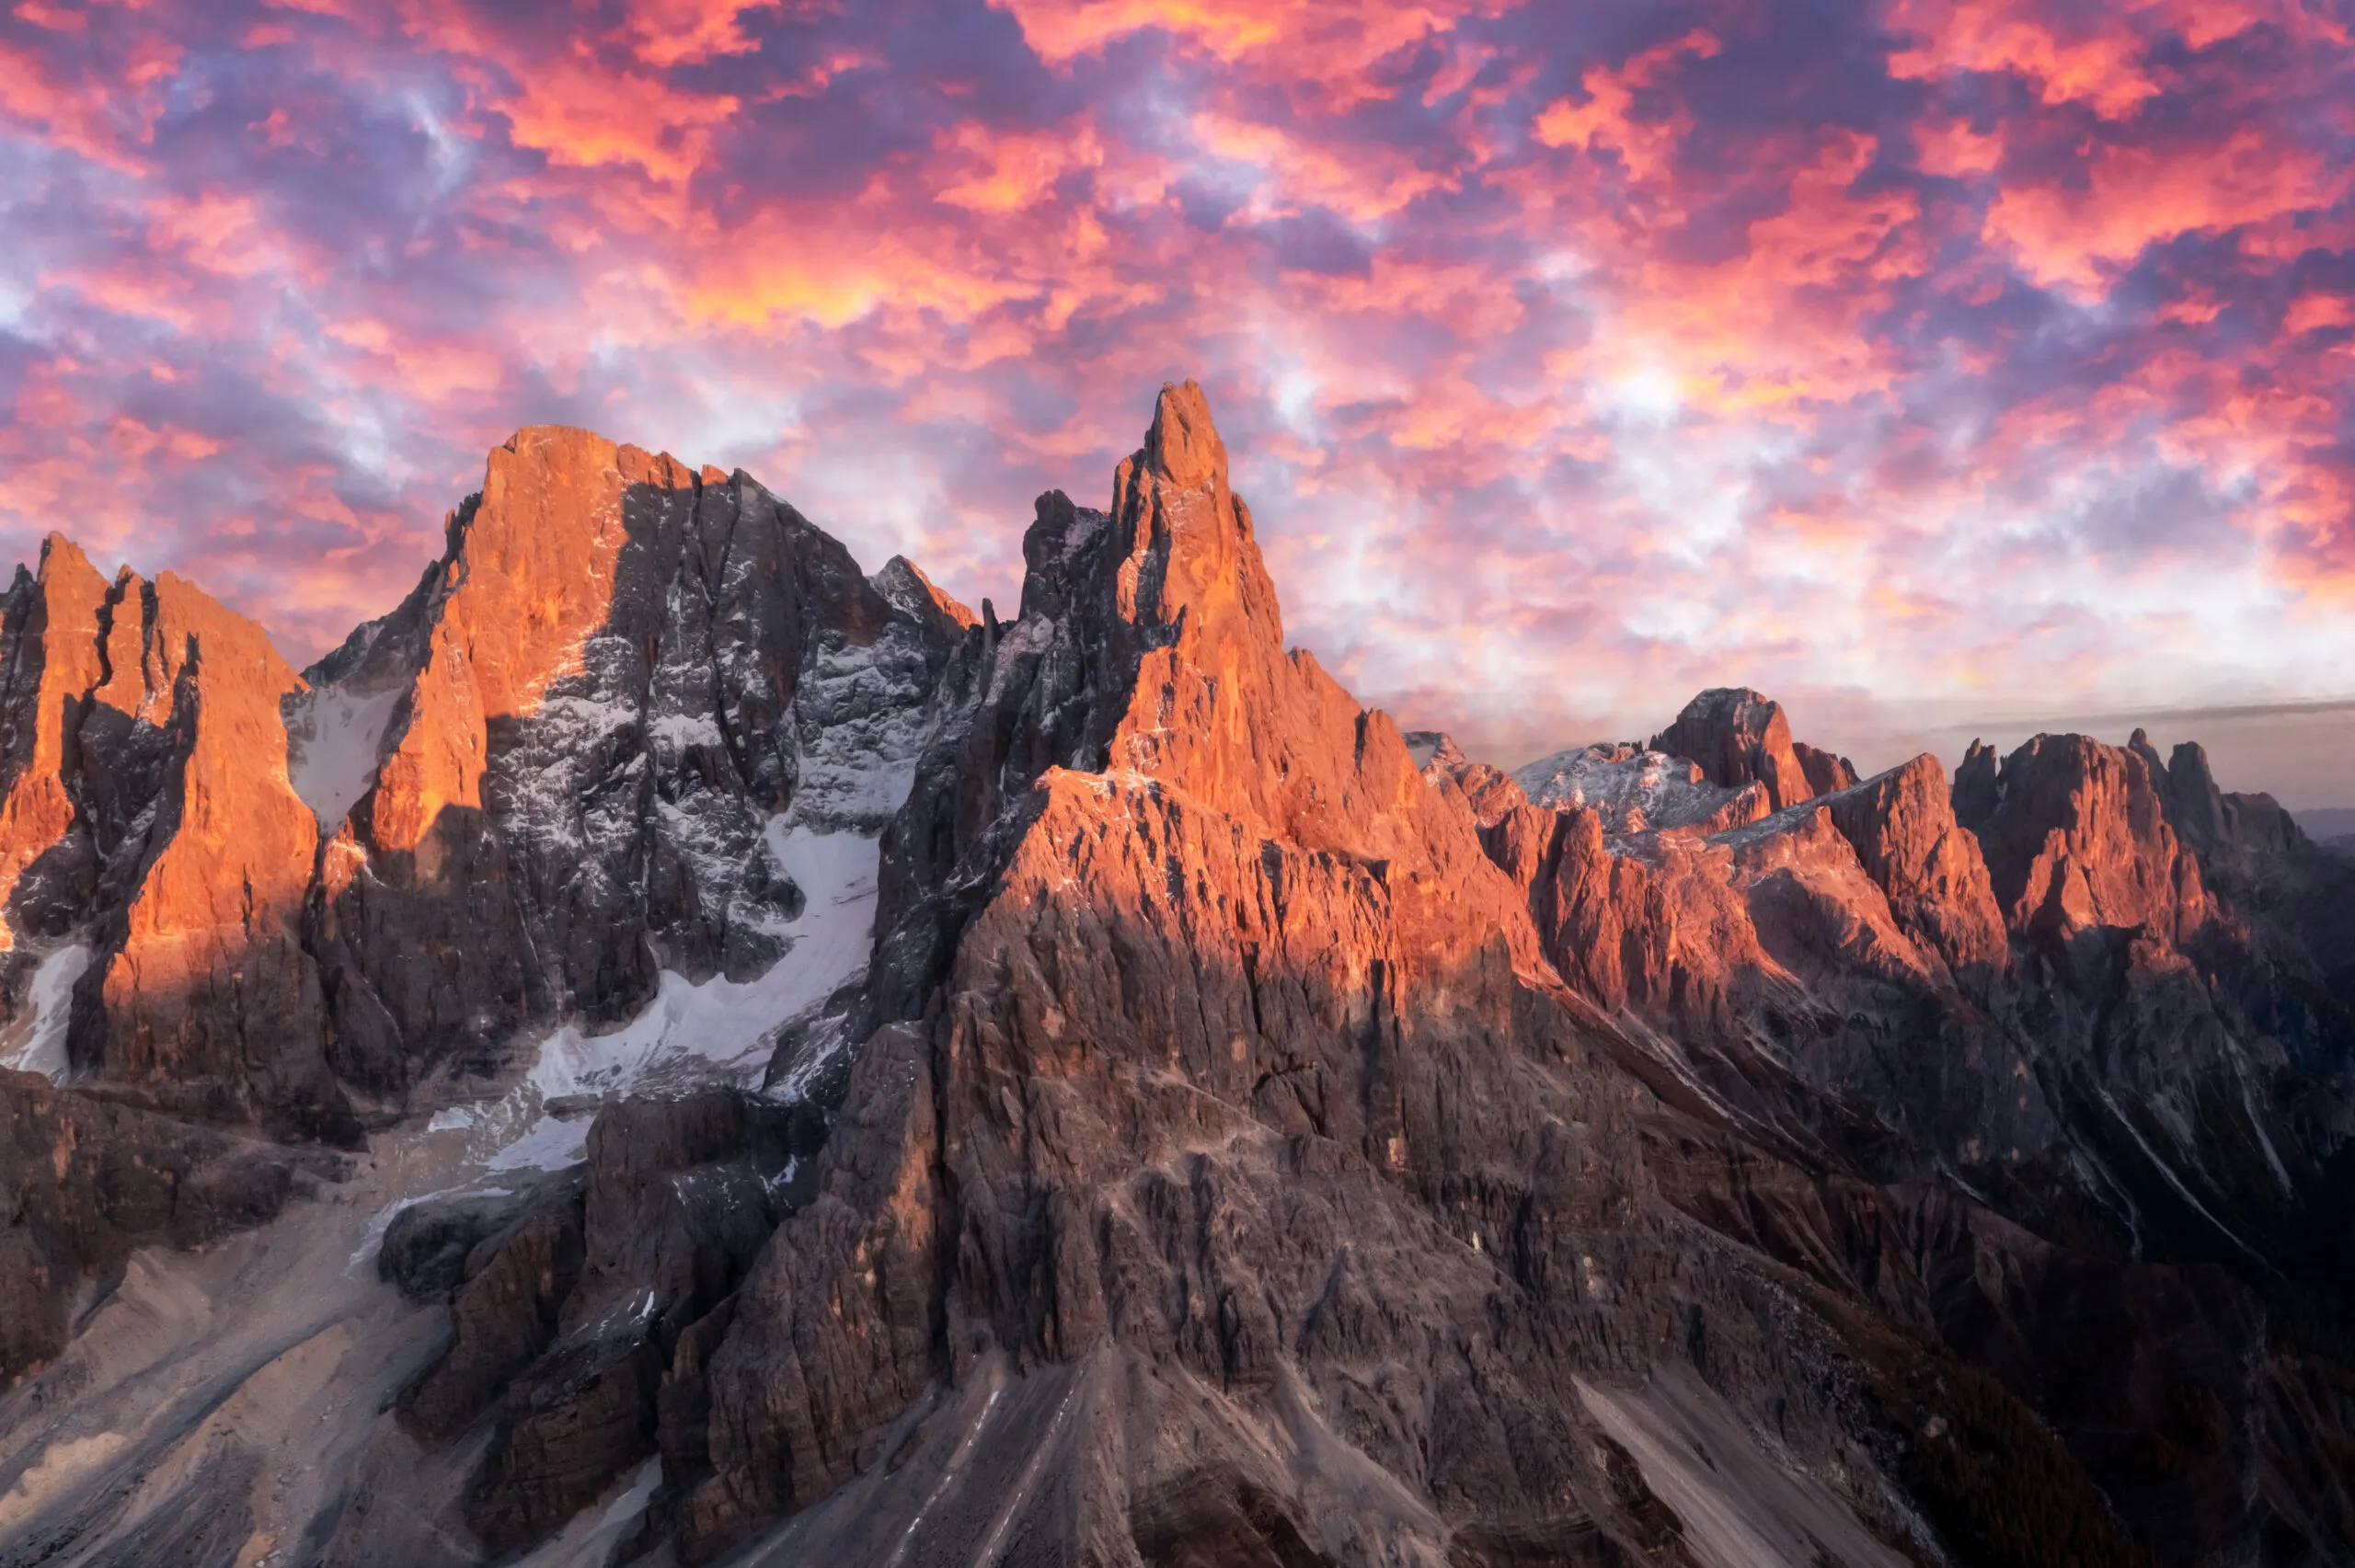 Gruppo montuoso delle Pale di San Martino al tramonto. Alte montagne con ghiacciai che brillano alla luce del tramonto. San Martino di Castrozza, Dolomiti, Trentino, Italia